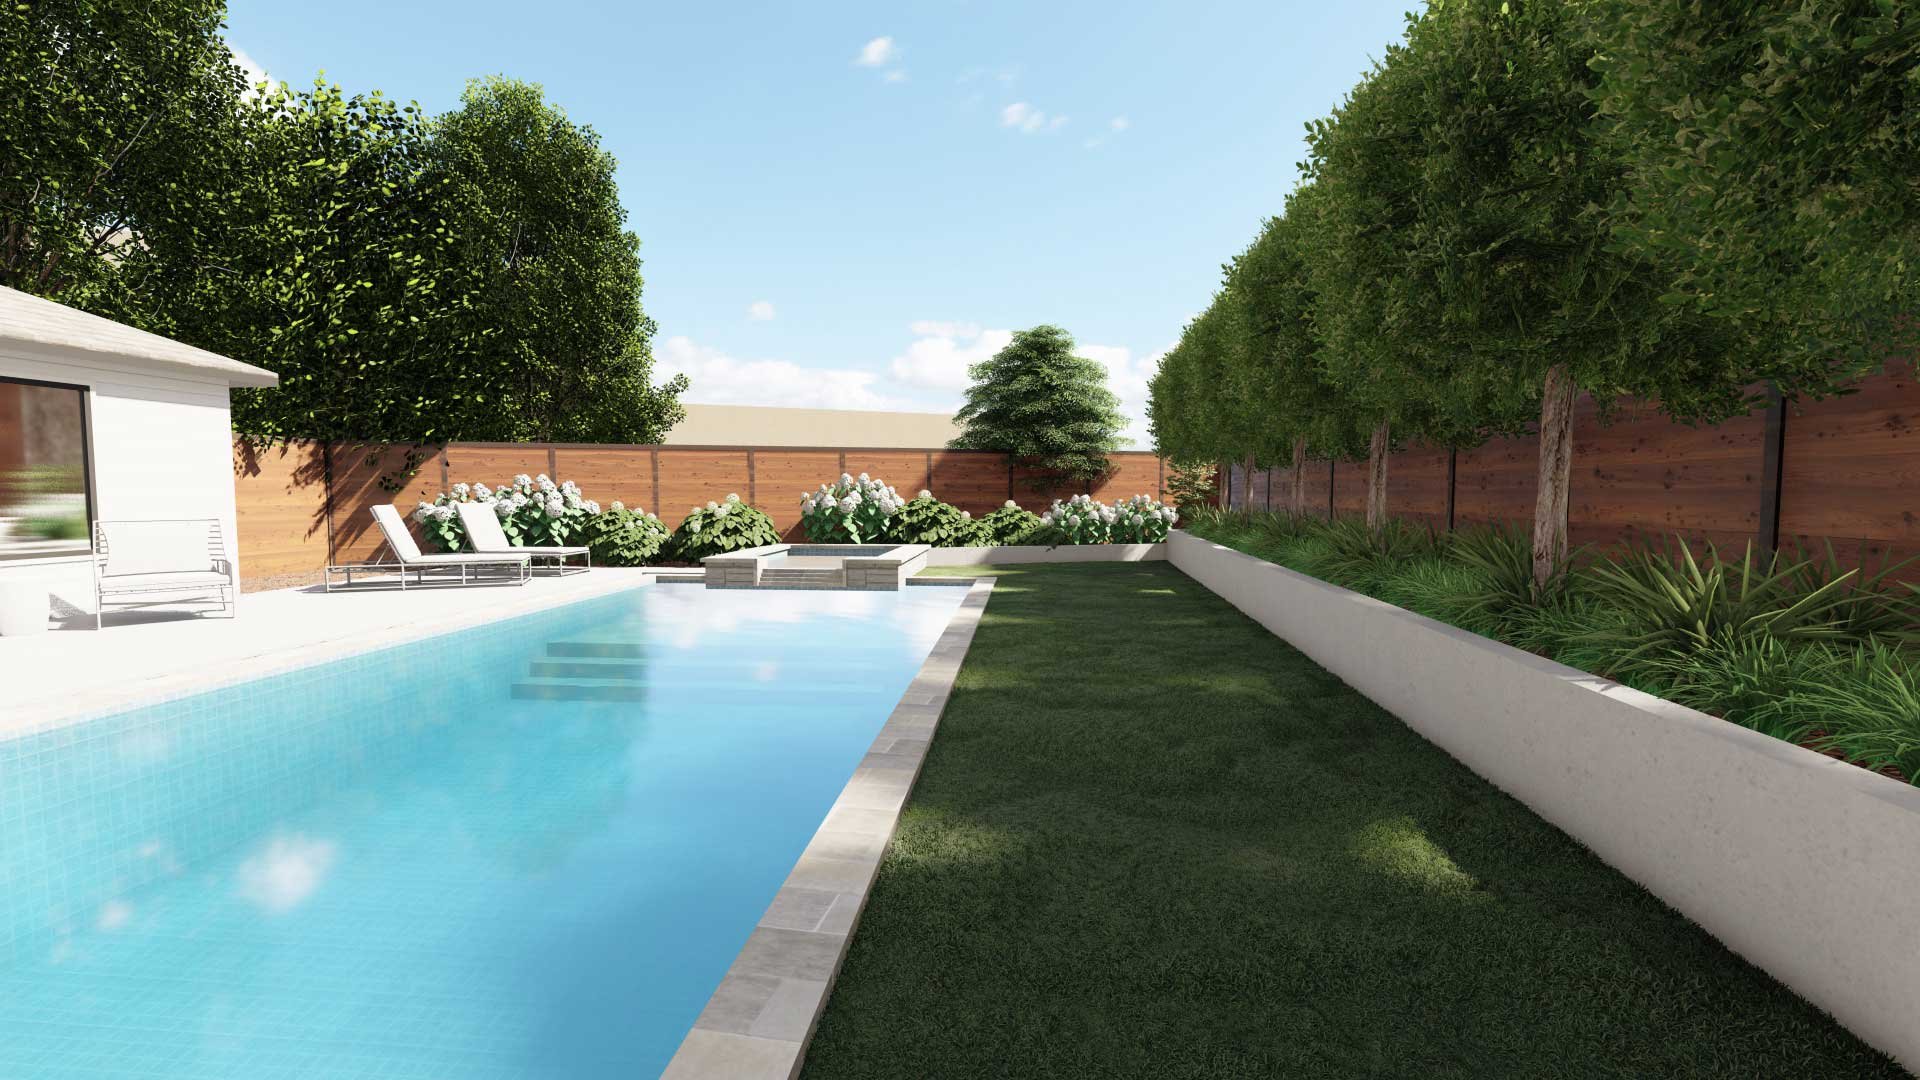 树木填充的挡土墙为德克萨斯州达拉斯后院的游泳池区域创造了额外的隐私